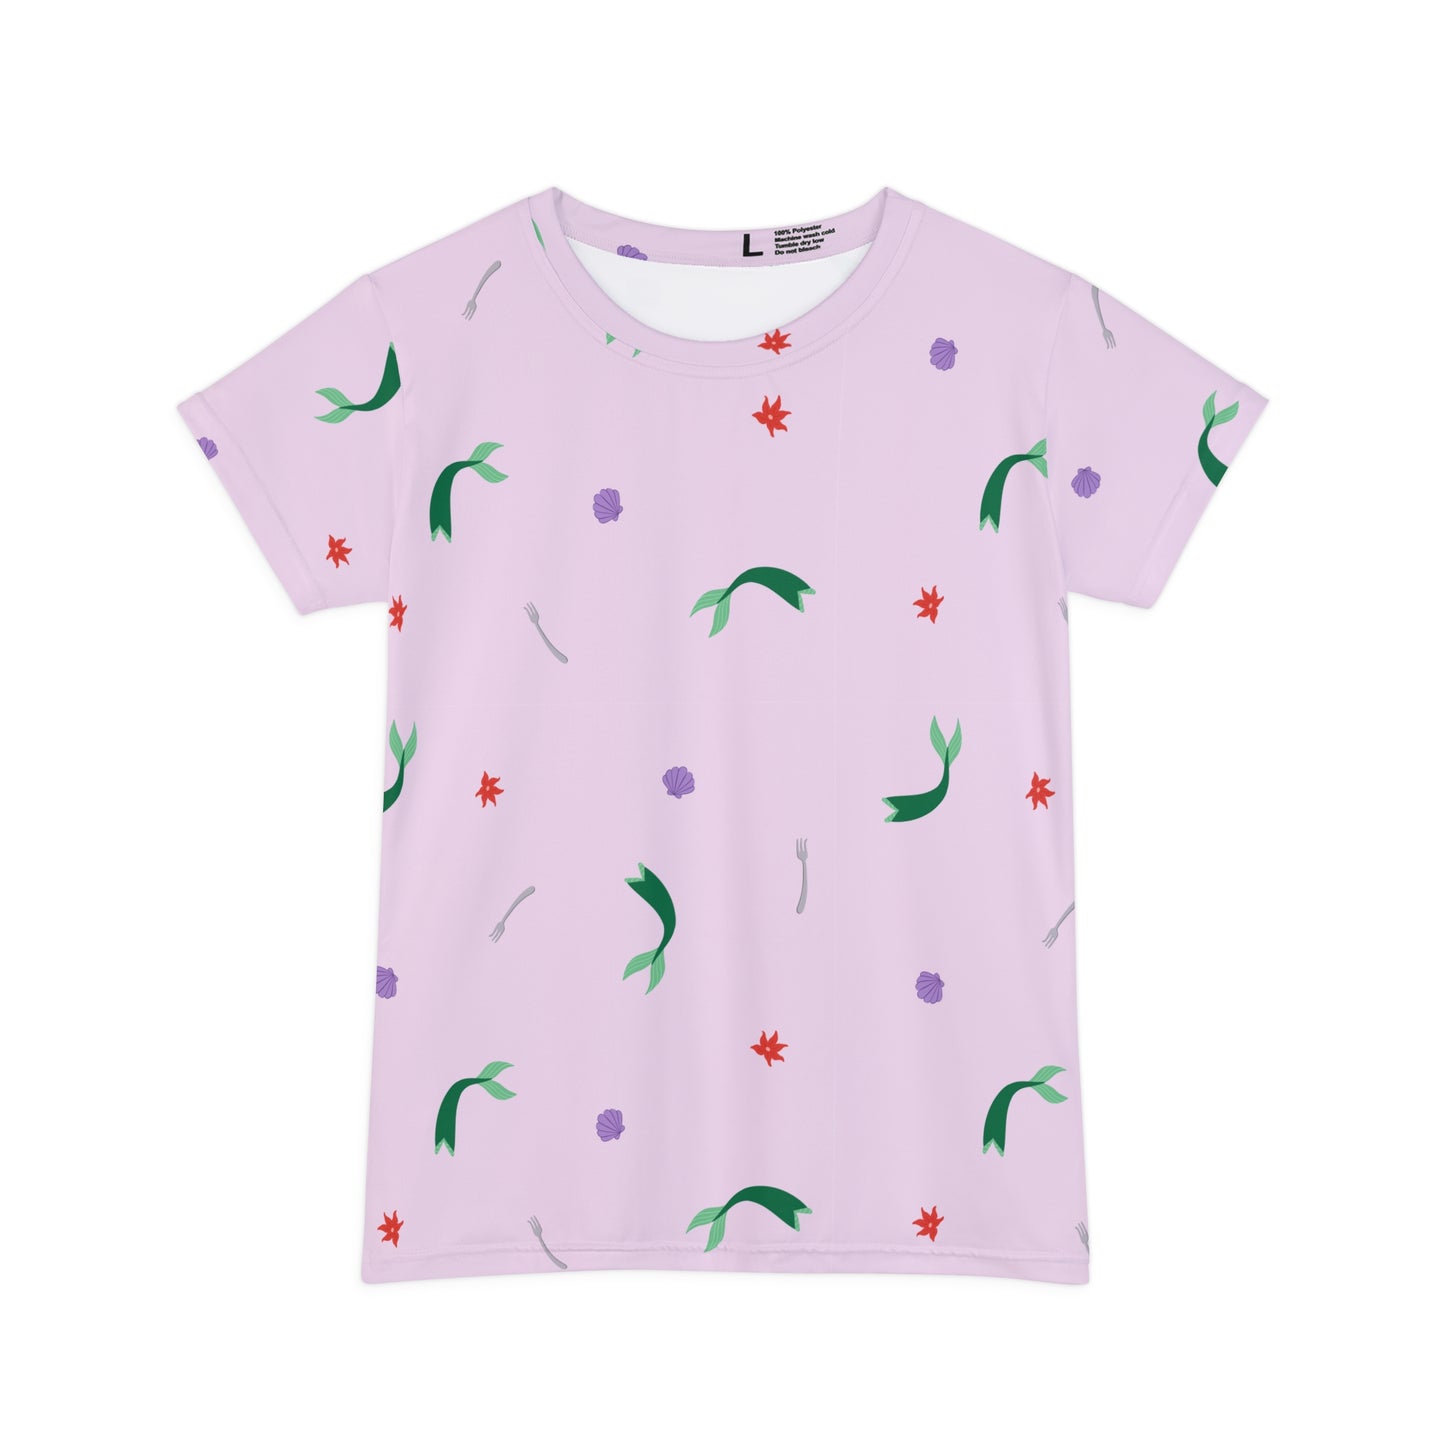 Ariel's Favorite Things - Little Mermaid Inspired - Women's Tshirt